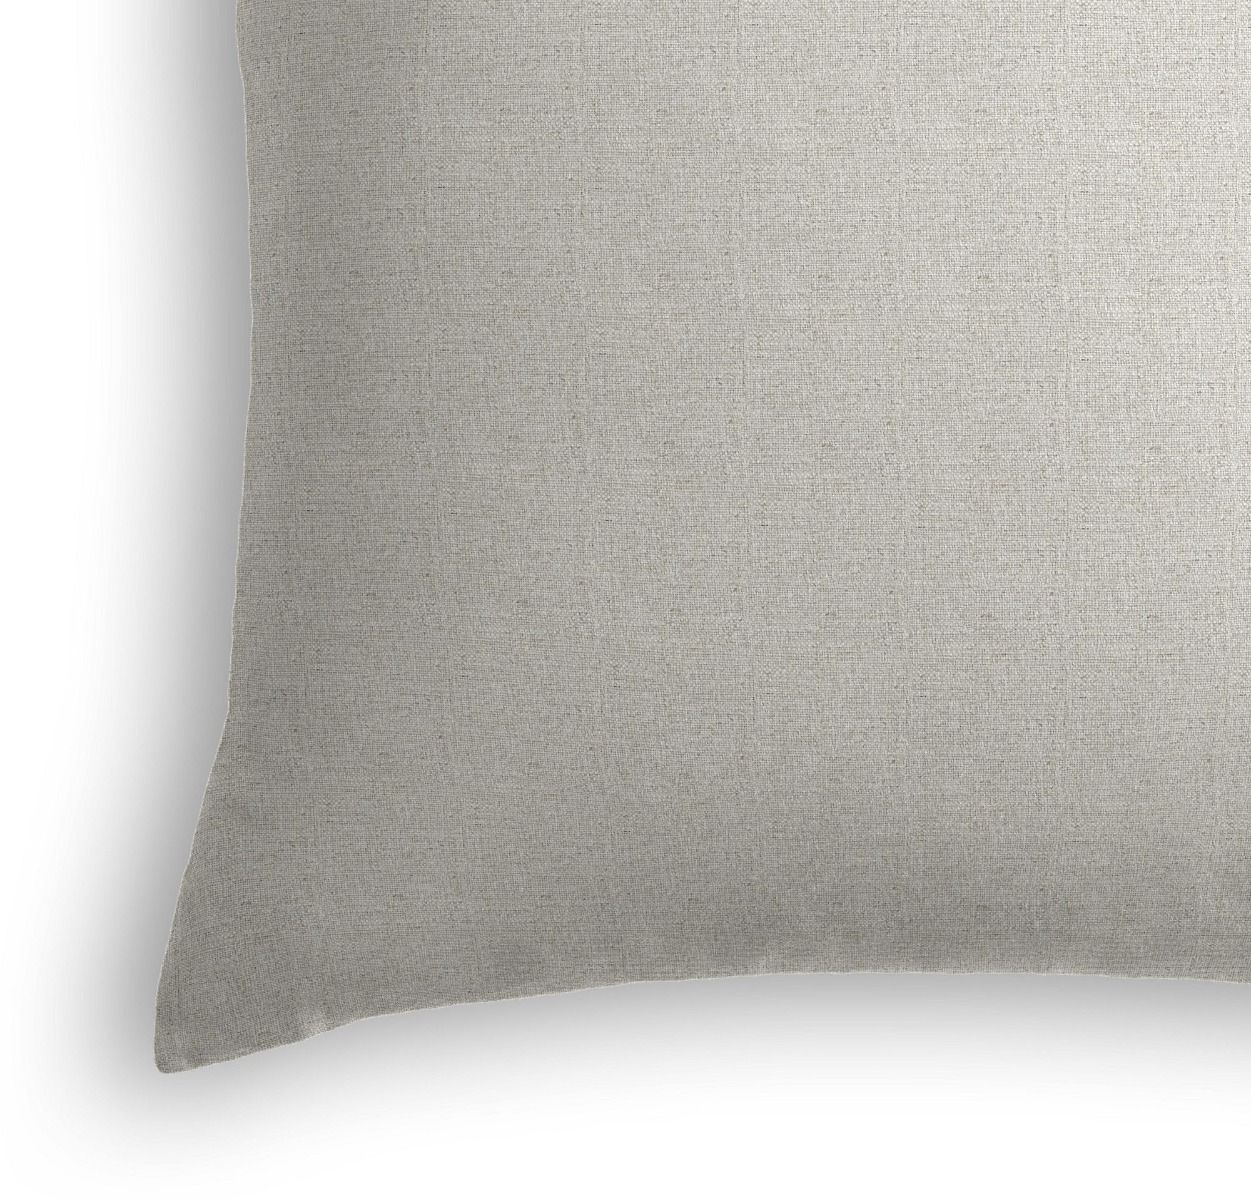 Classic Linen Lumbar Pillow, Sandy Tan, 18" x 12" - Image 1